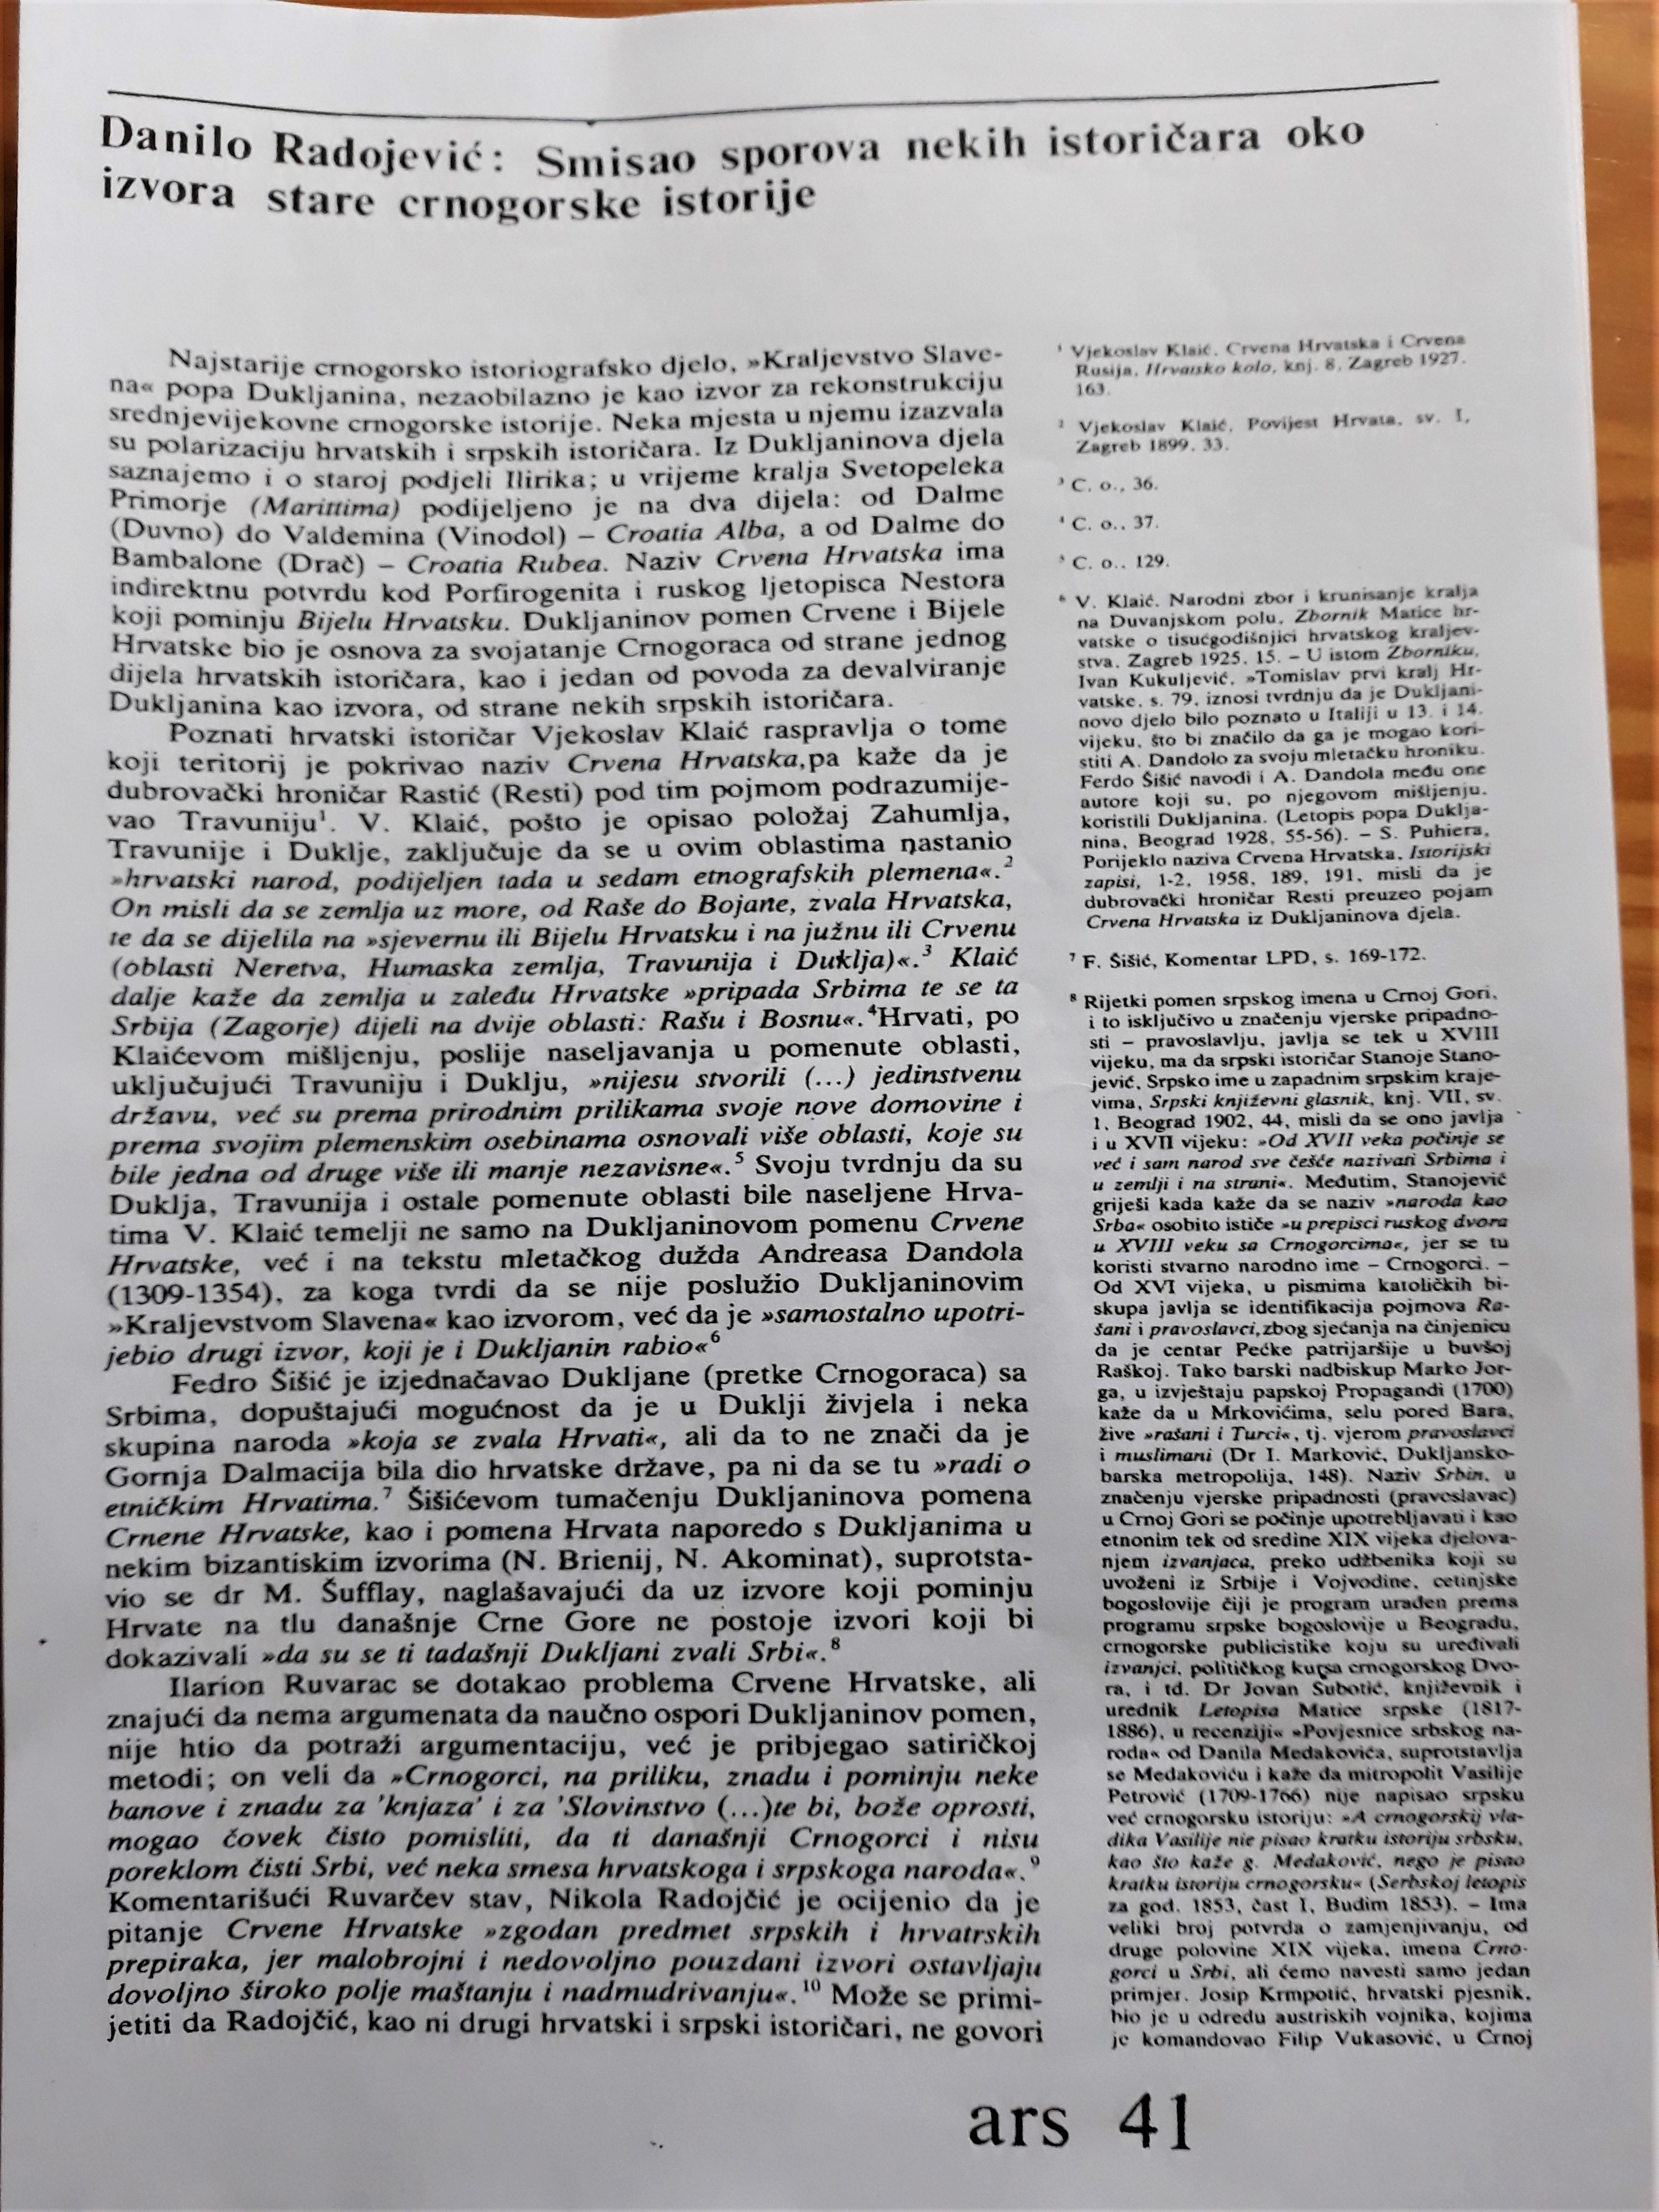 Radojević Danilo. „Smisao sporova nekih istoričara oko izvora stare crnogorske istorije”, 1987. Članak u časopisu